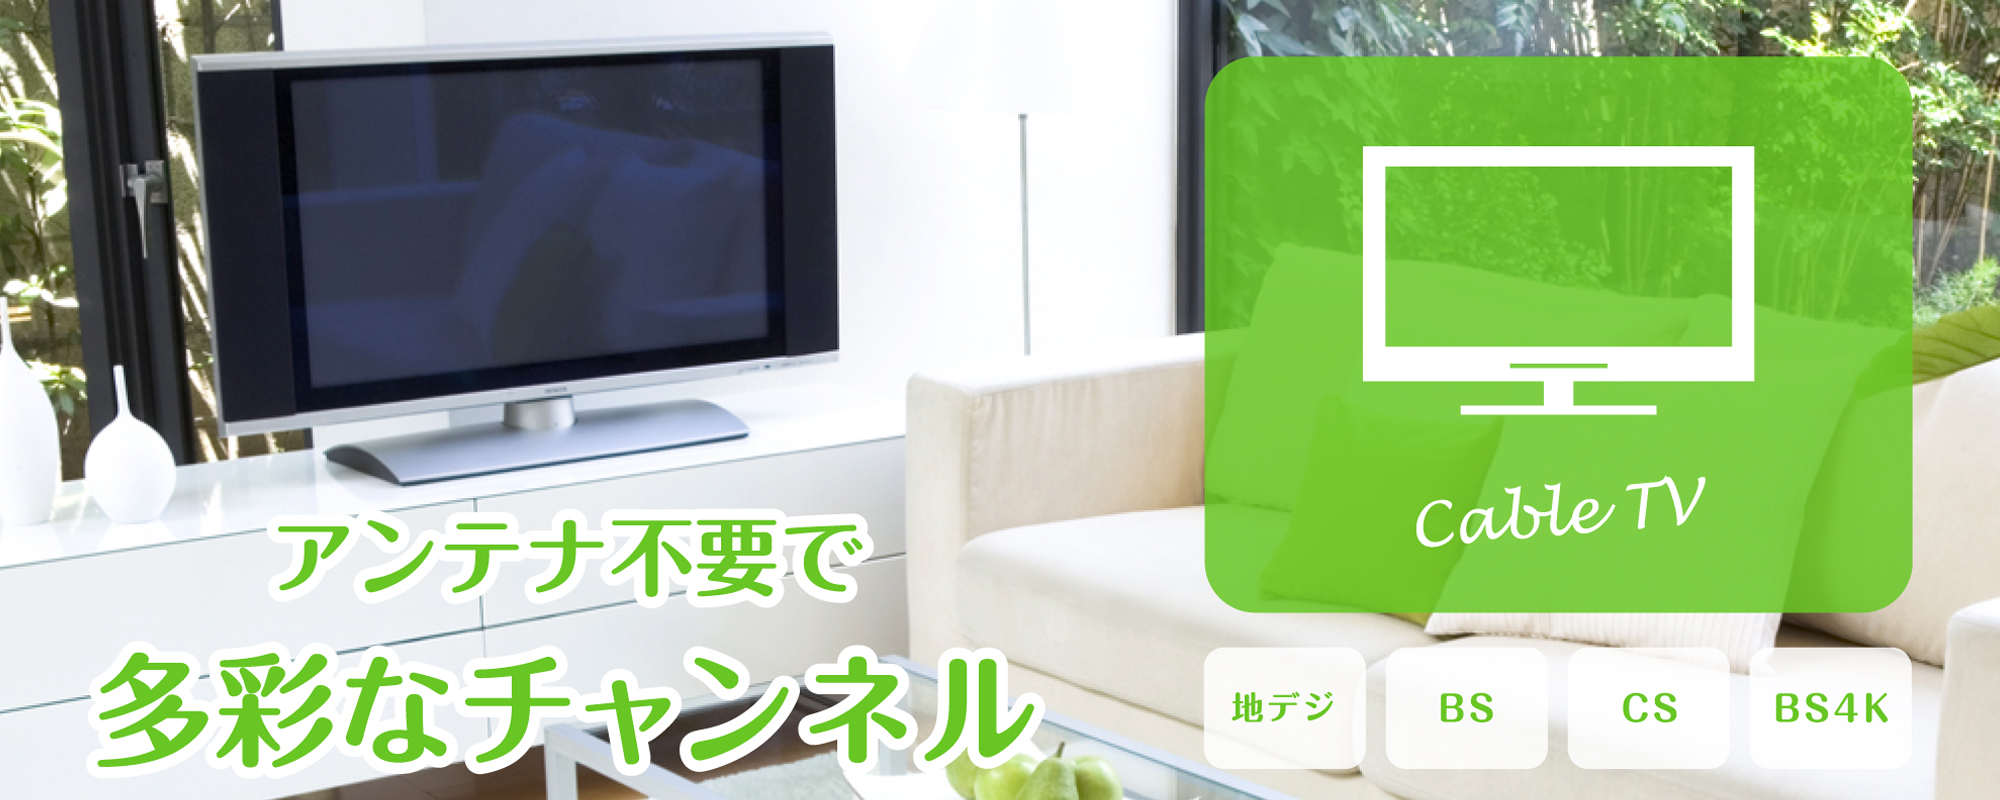 Cable TV Service-ケーブルテレビサービス-｜にいみiチャンネル